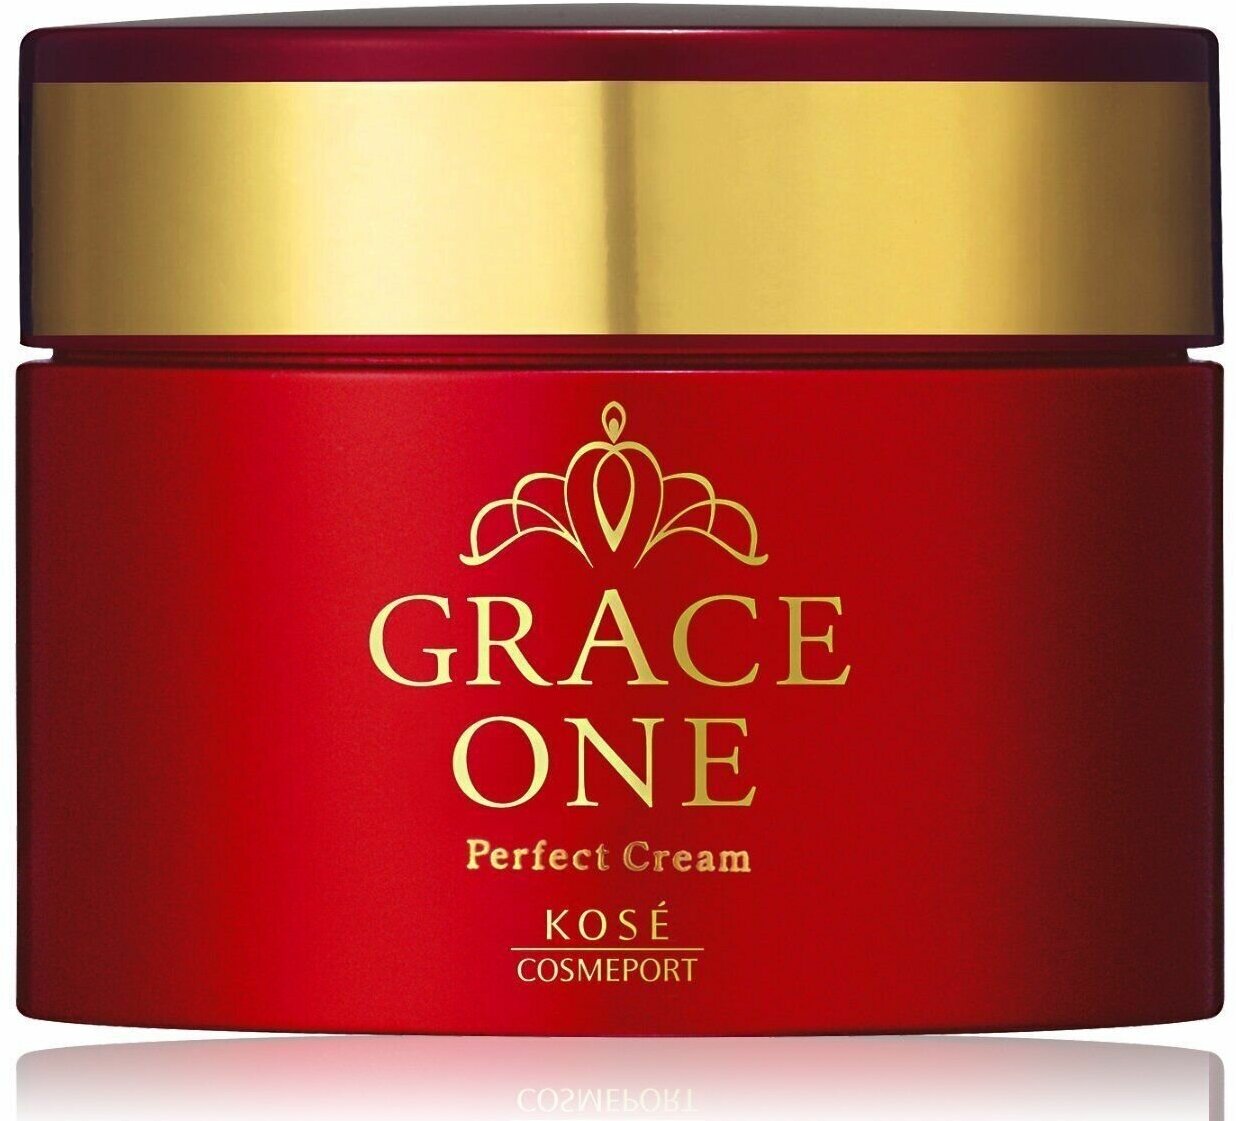 Омолаживающий крем для лица KOSE Grace One Perfect Cream питательный для зрелой кожи 100г.